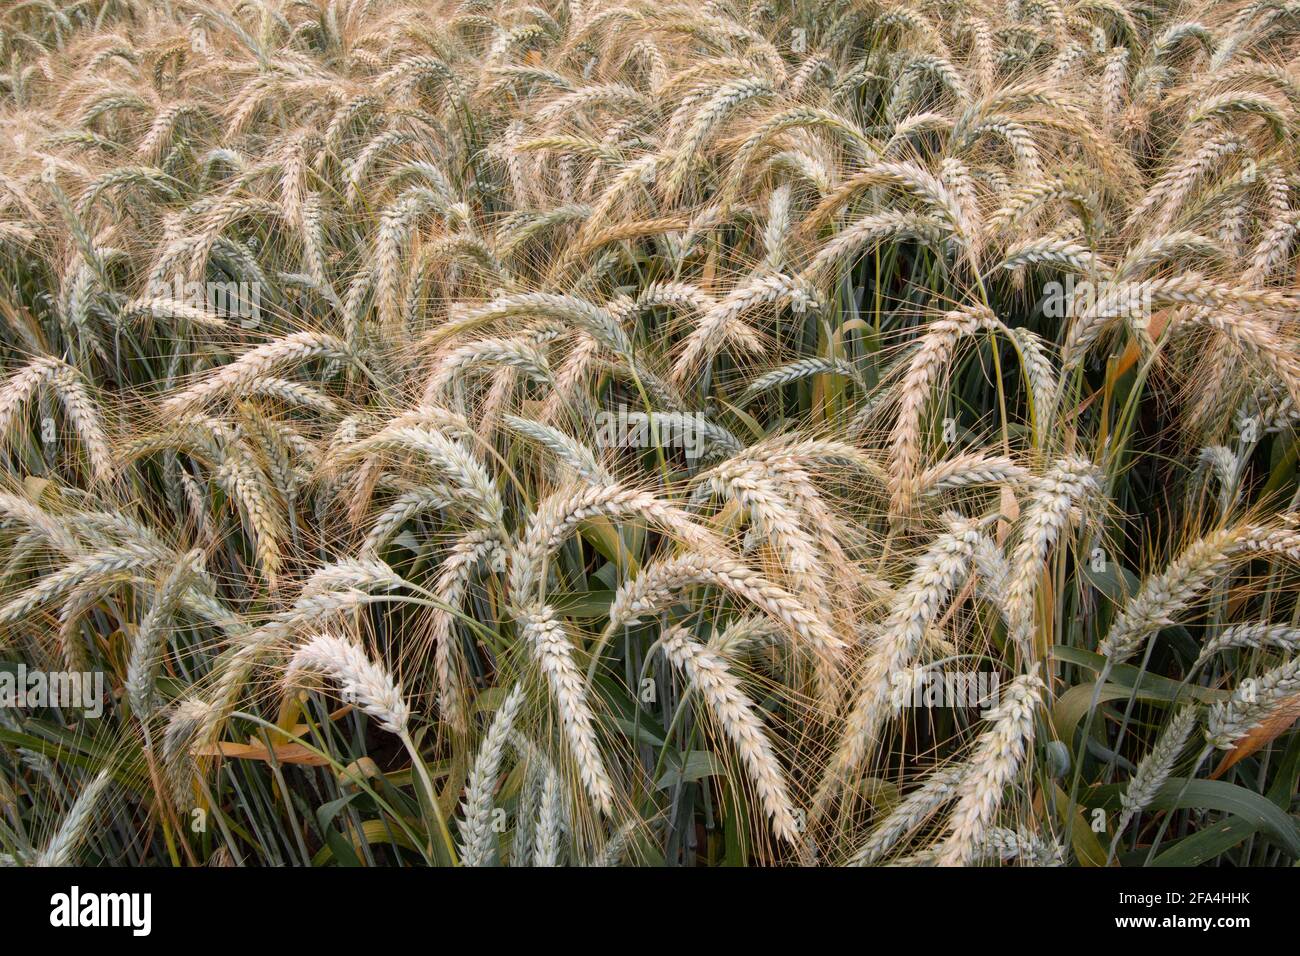 Eine reifende Ernte aus Triticale-Weizen, einem Bio-Produkt der bewässerten Landwirtschaft im kalifornischen San Joaquin Valley, Merced County. Stockfoto